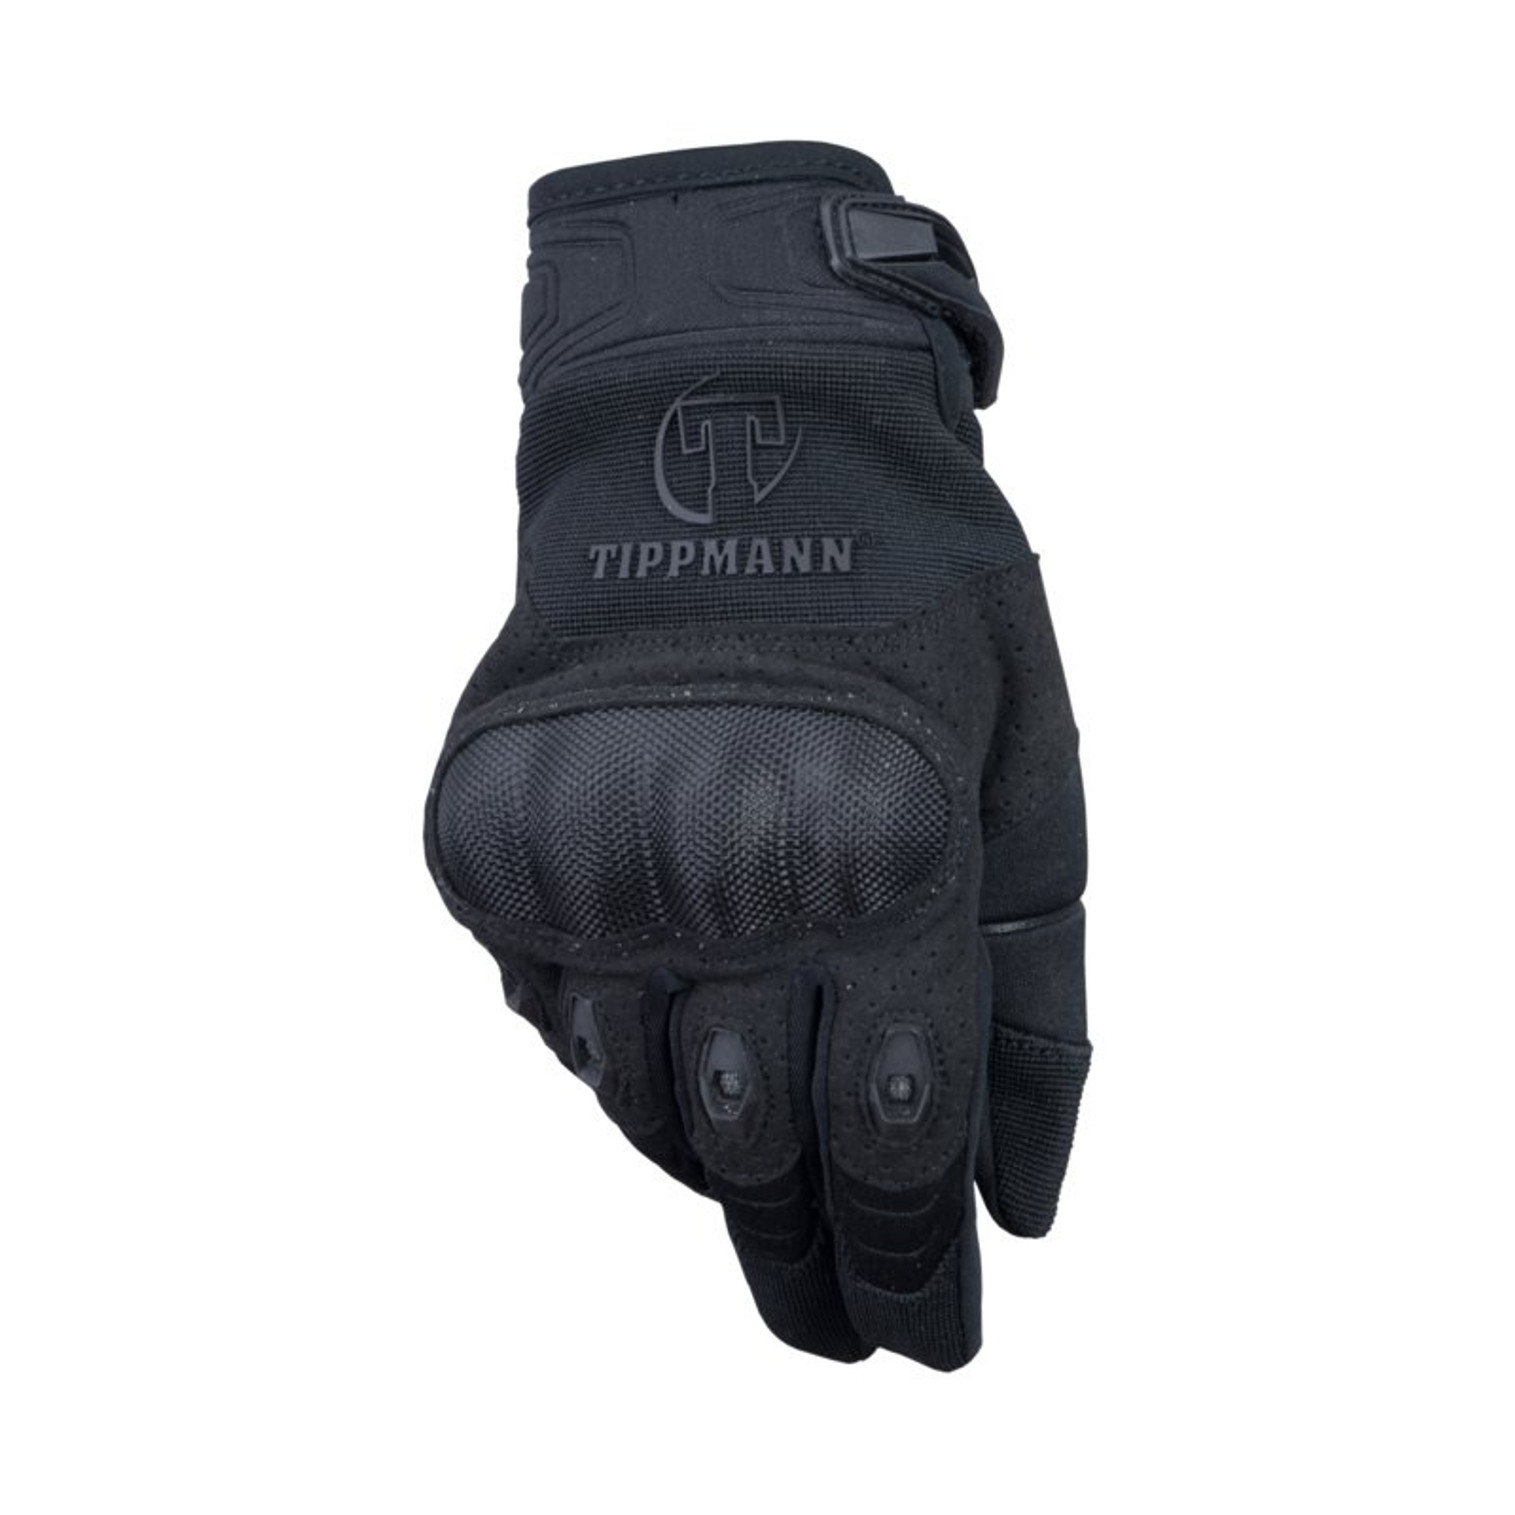 Tippmann Attack Glove